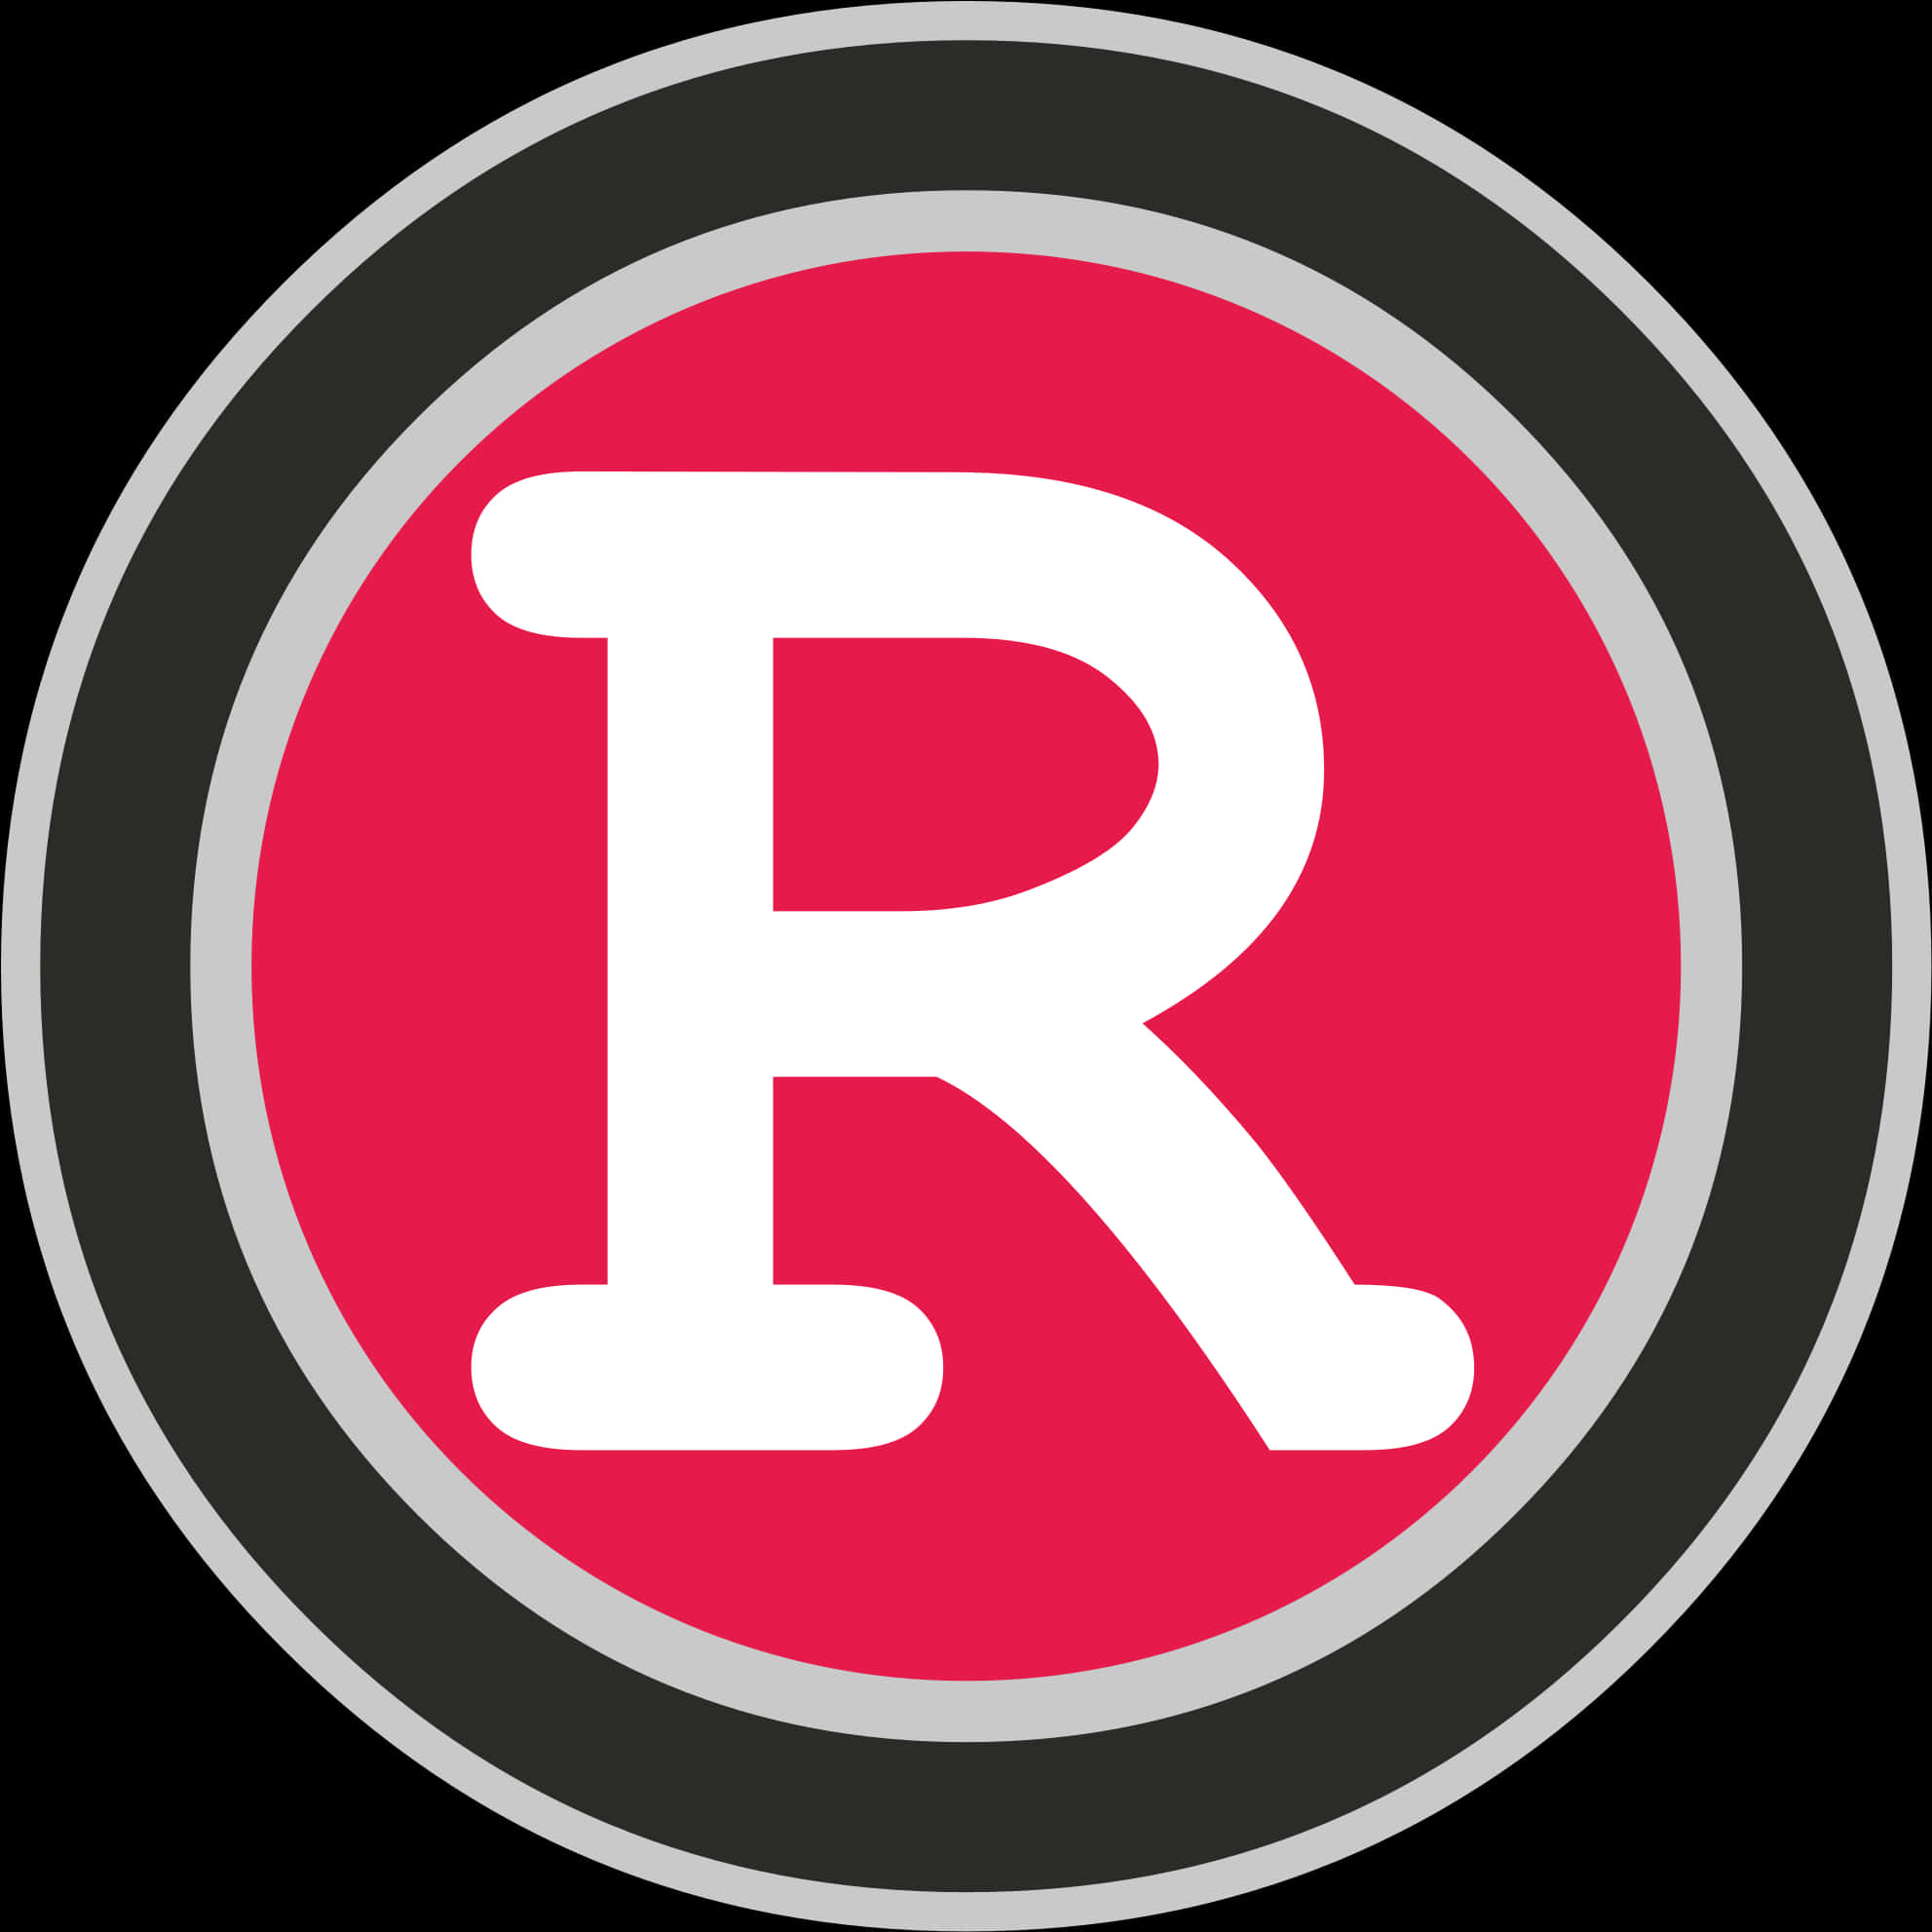 Registered Trademark Symbol PNG image